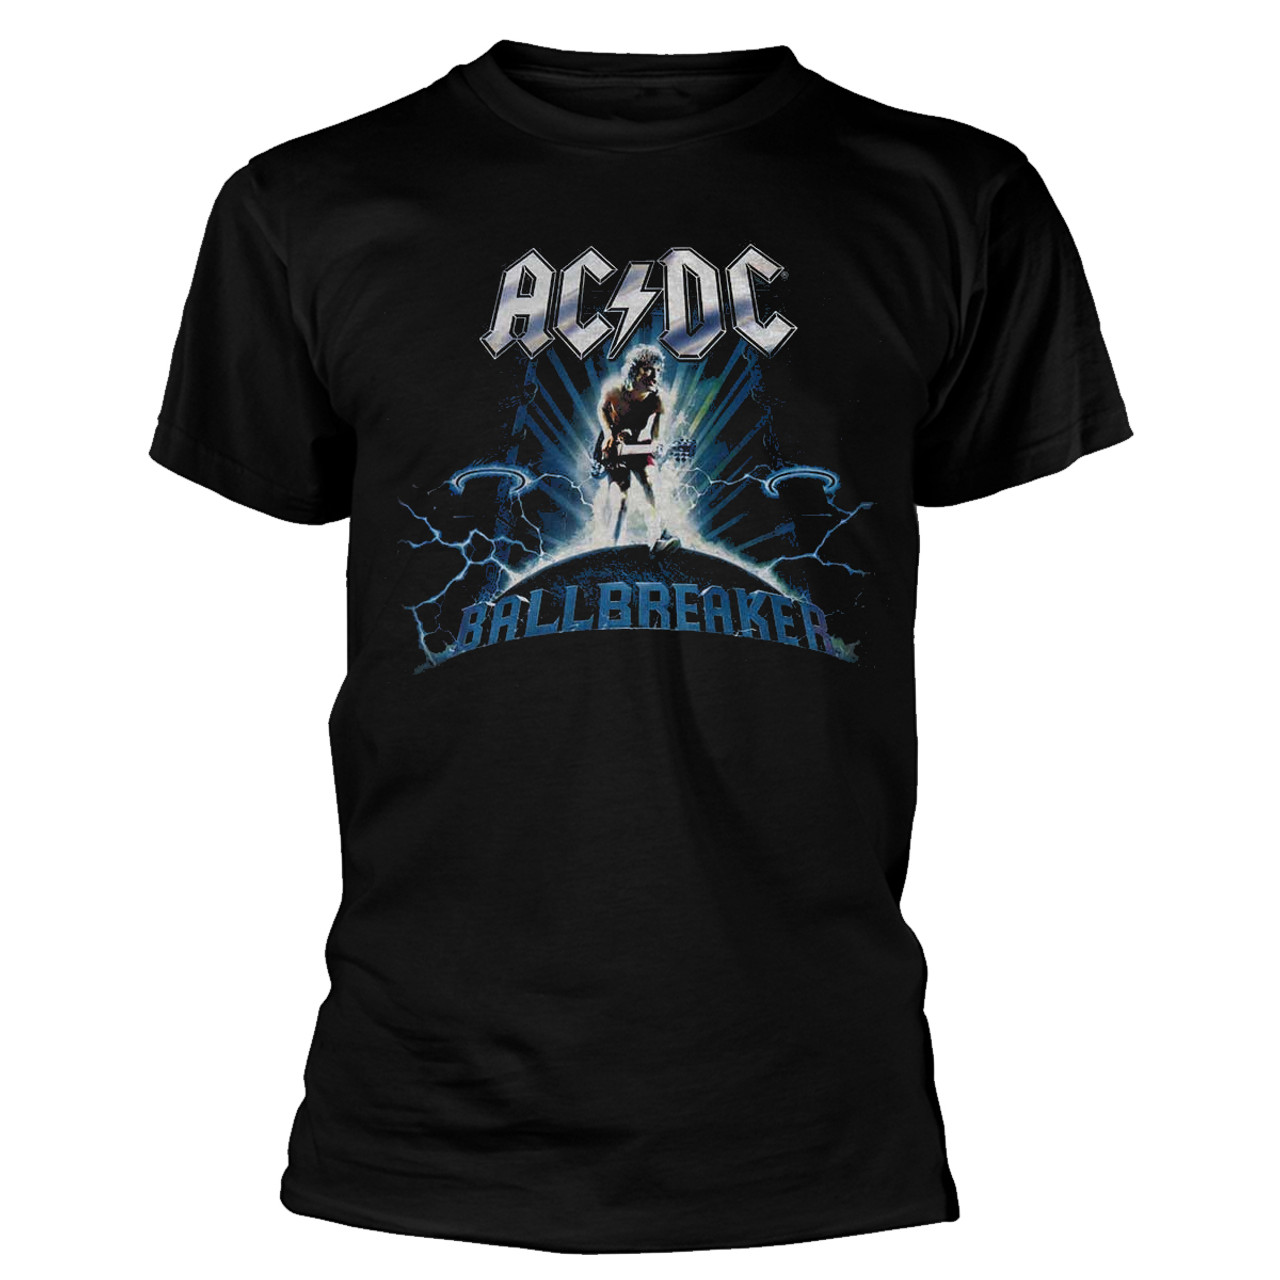 AC/DC 'Ballbreaker' (Black) T-Shirt Ã‚Â¦ Eyesore Merch